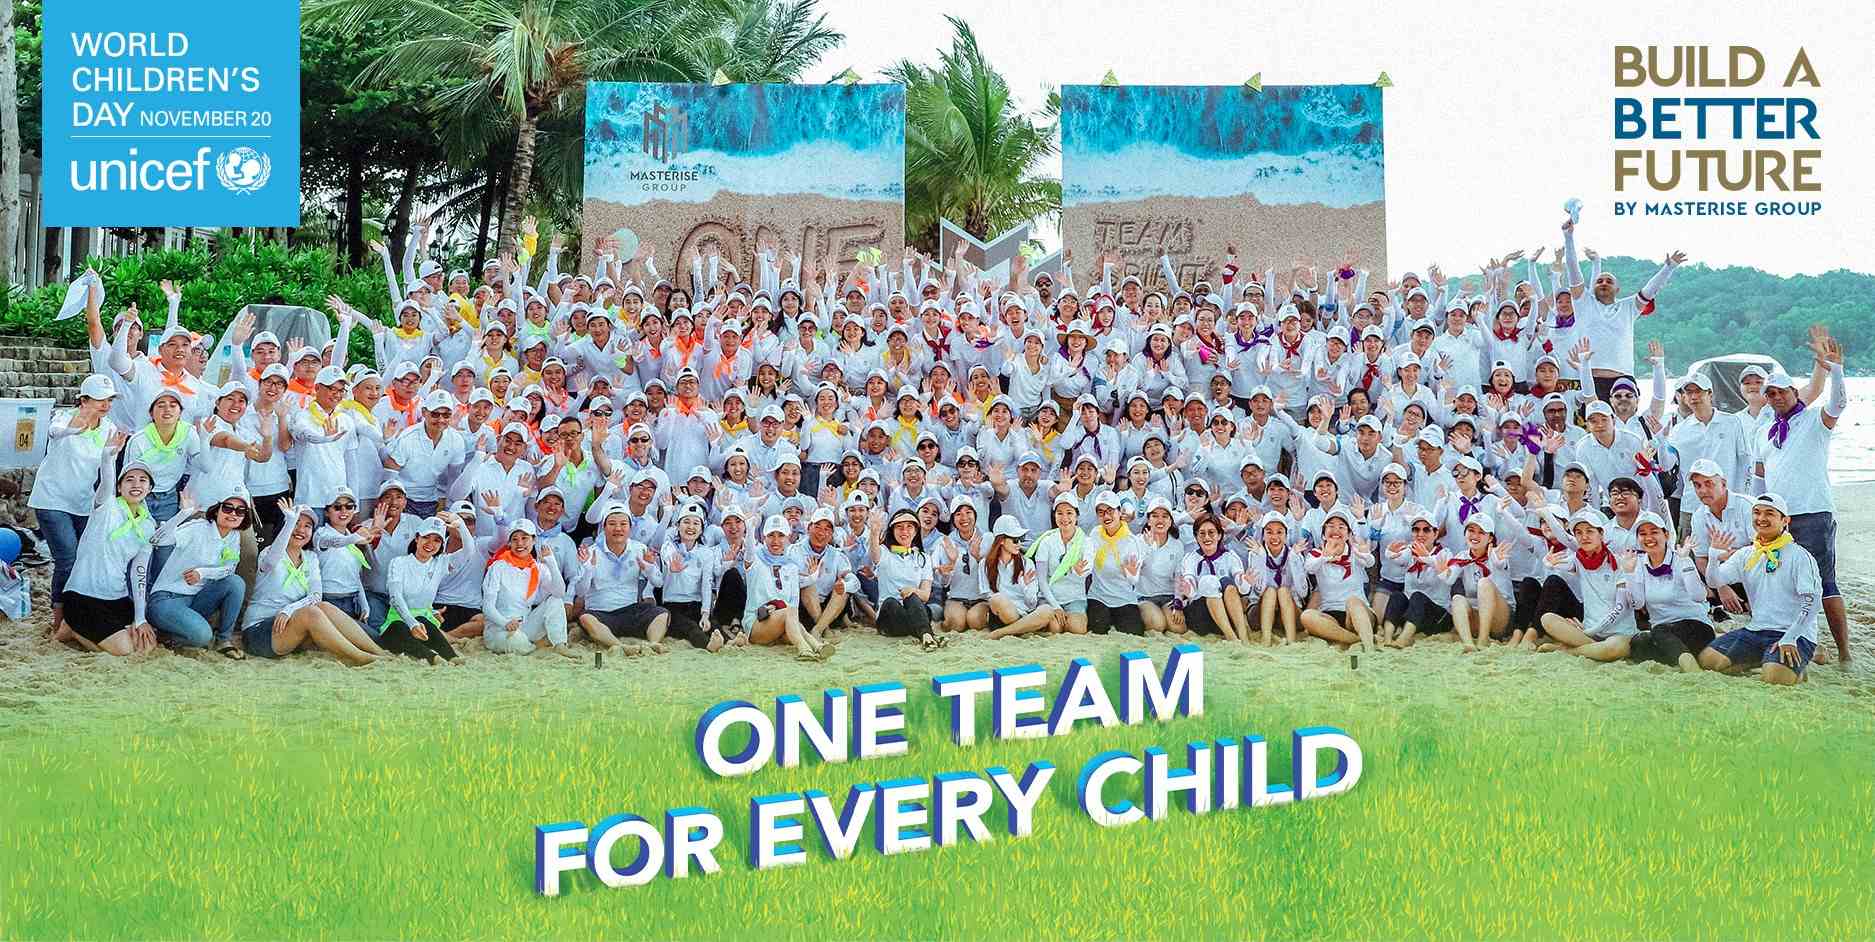 与 MASTERISE 集团一起成为联合国儿童基金会的团队 #V FOR EVERY_KILD